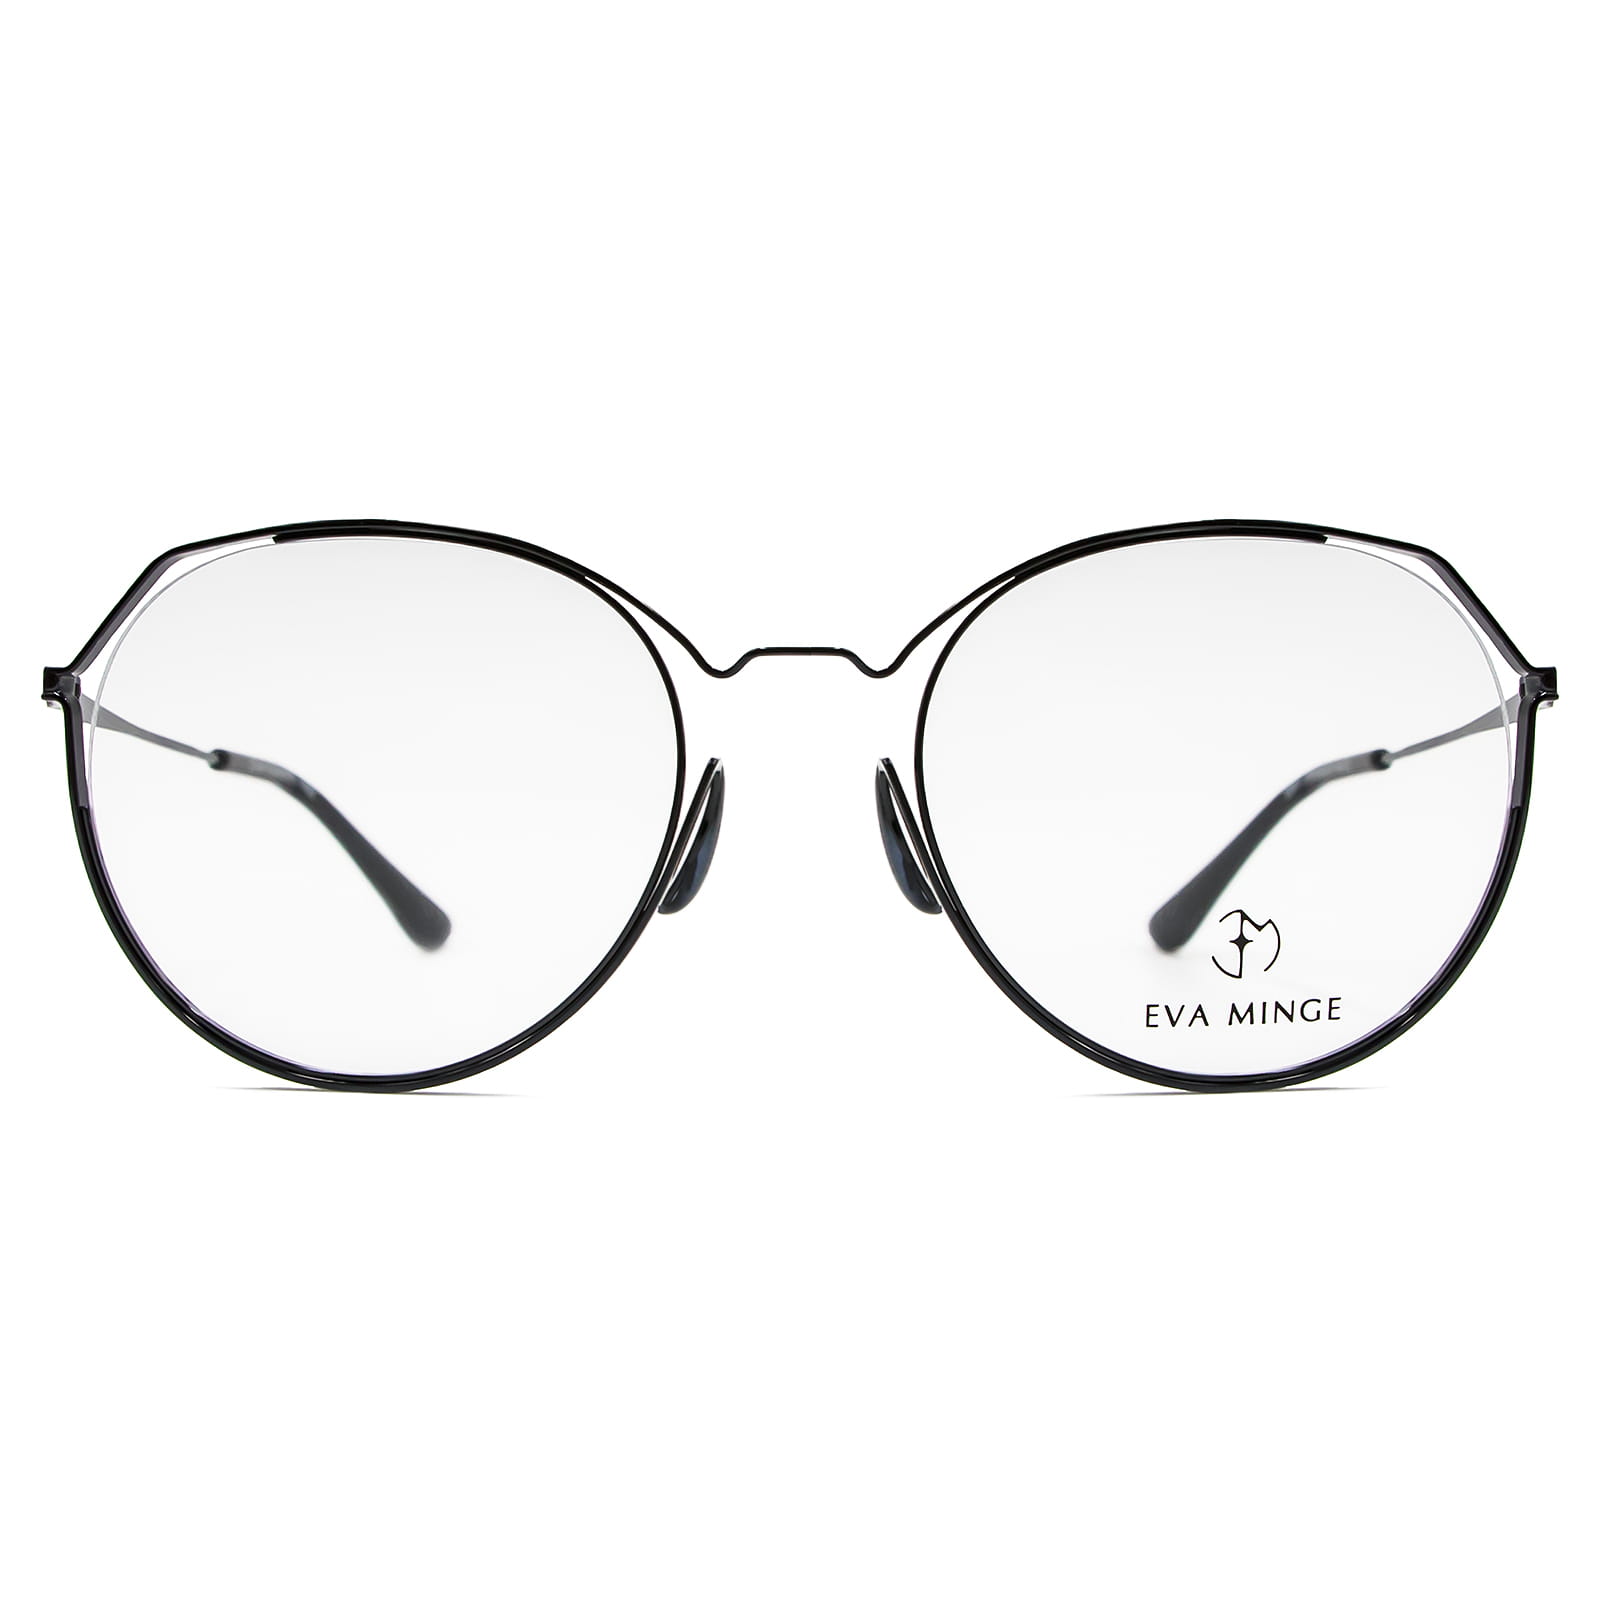 Okulary Eva Minge EMP 1018 C2 oprawki okularowe